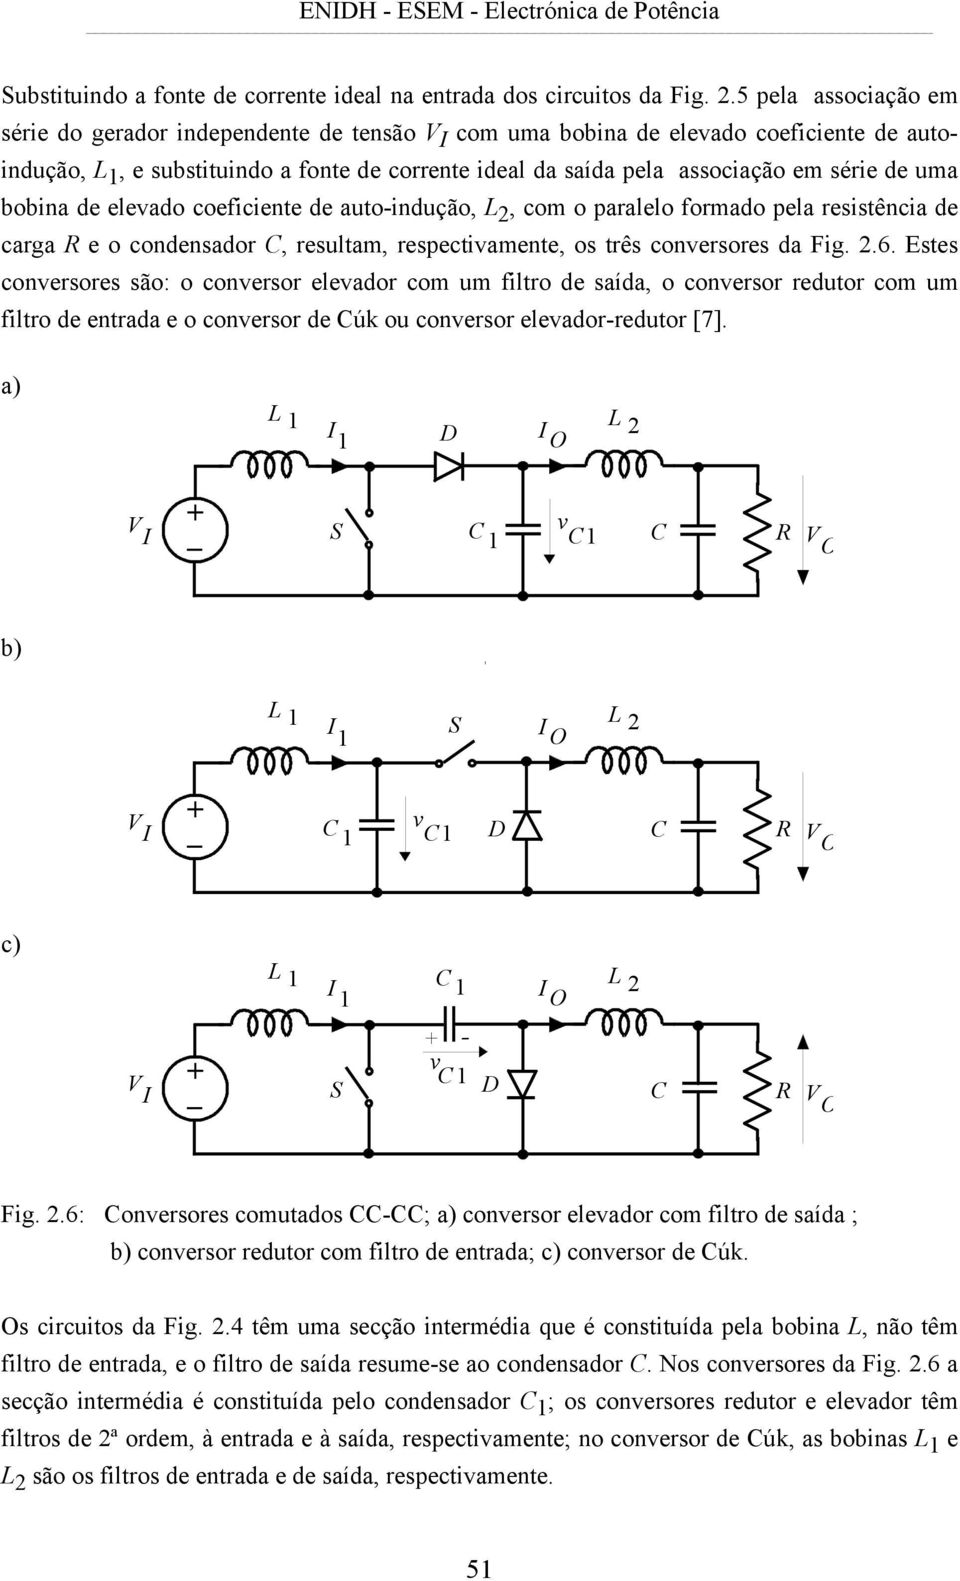 bobina de elevado coeficiene de auo-indução, L 2, com o paralelo formado pela resisência de carga R e o condensador C, resulam, respecivamene, os rês conversores da Fig. 2.6.